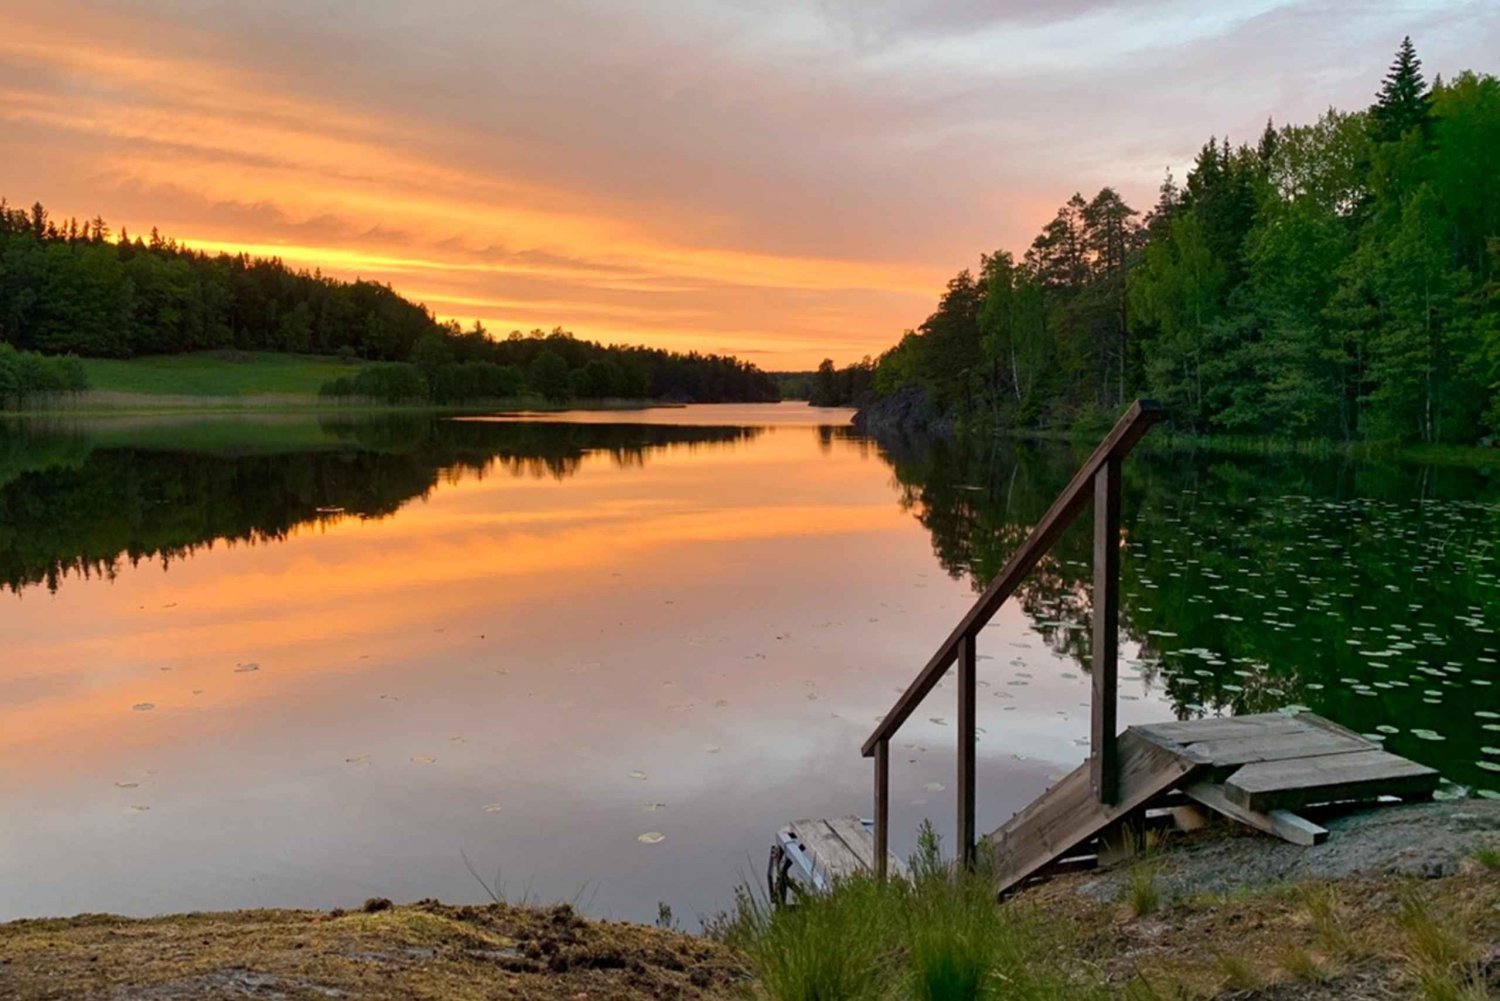 Estocolmo: Caminhada à noite/pôr do sol no Parque Nacional Tyresta